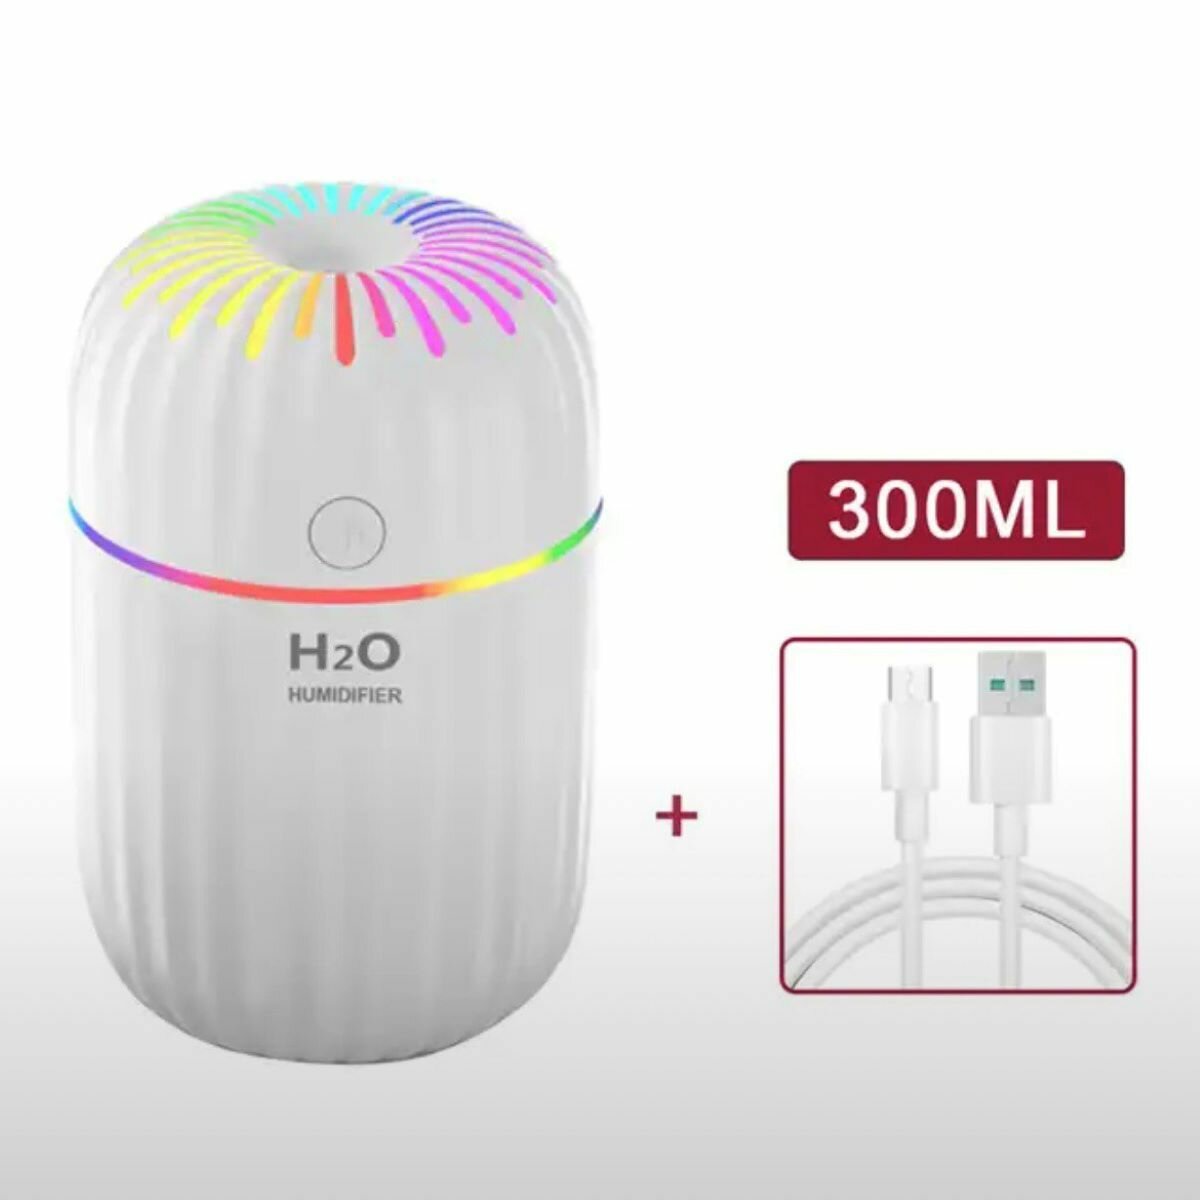 Увлажнитель воздуха H2O с подсветкой